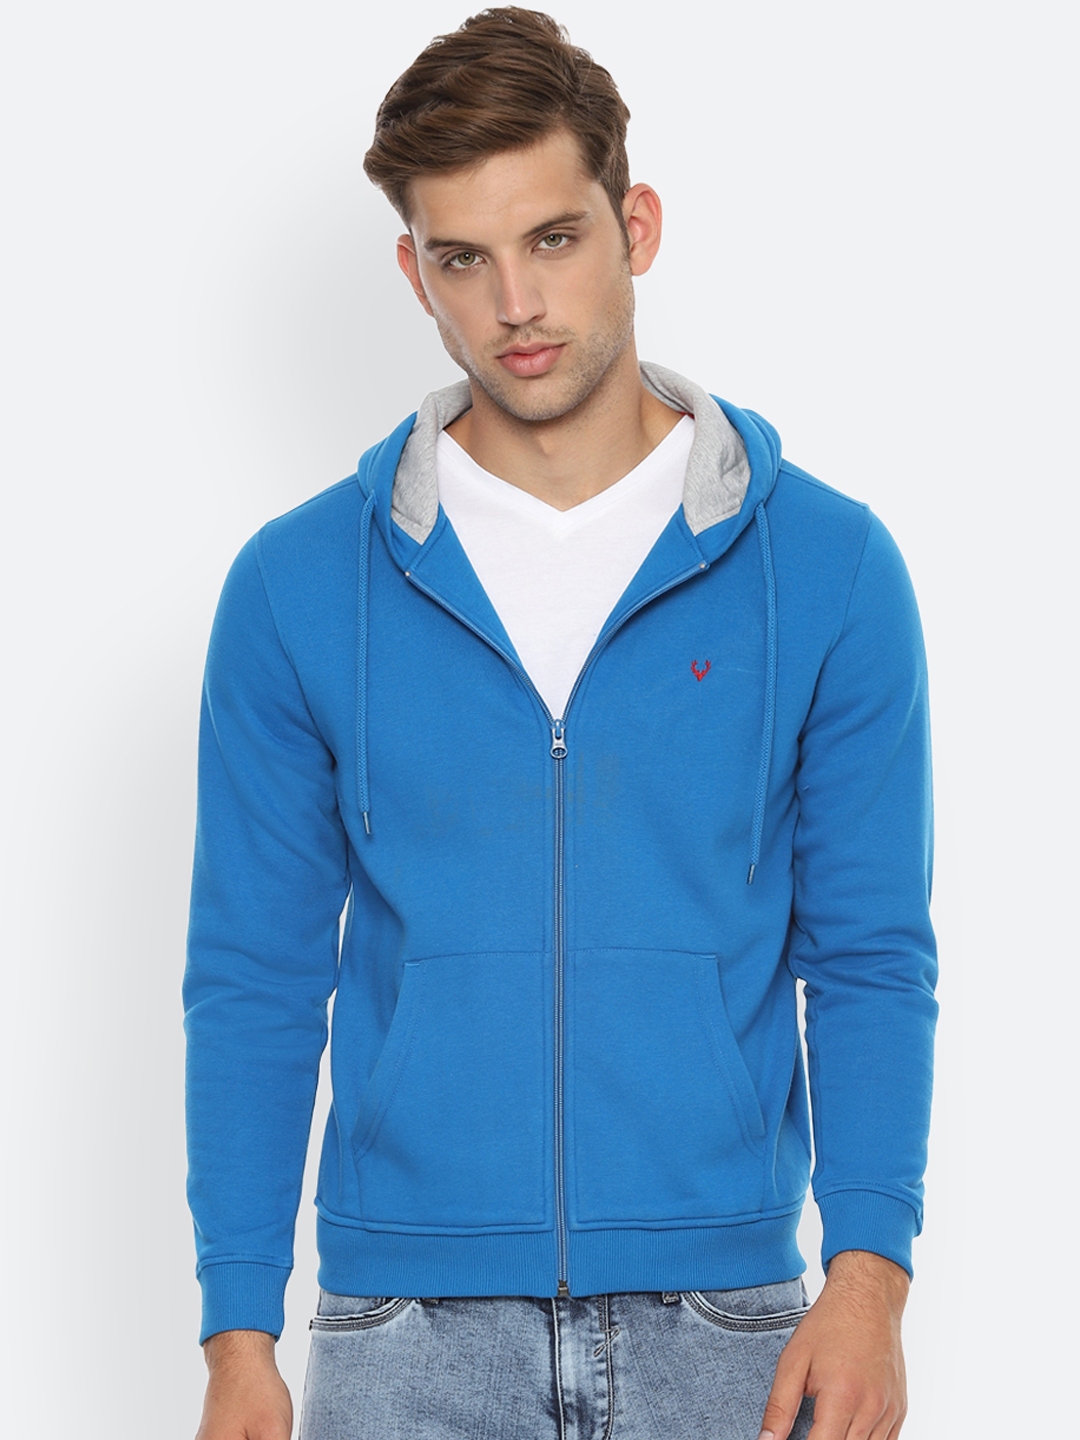 Buy Allen Solly Men Blue Solid Hooded Sweatshirt - Sweatshirts for Men ...